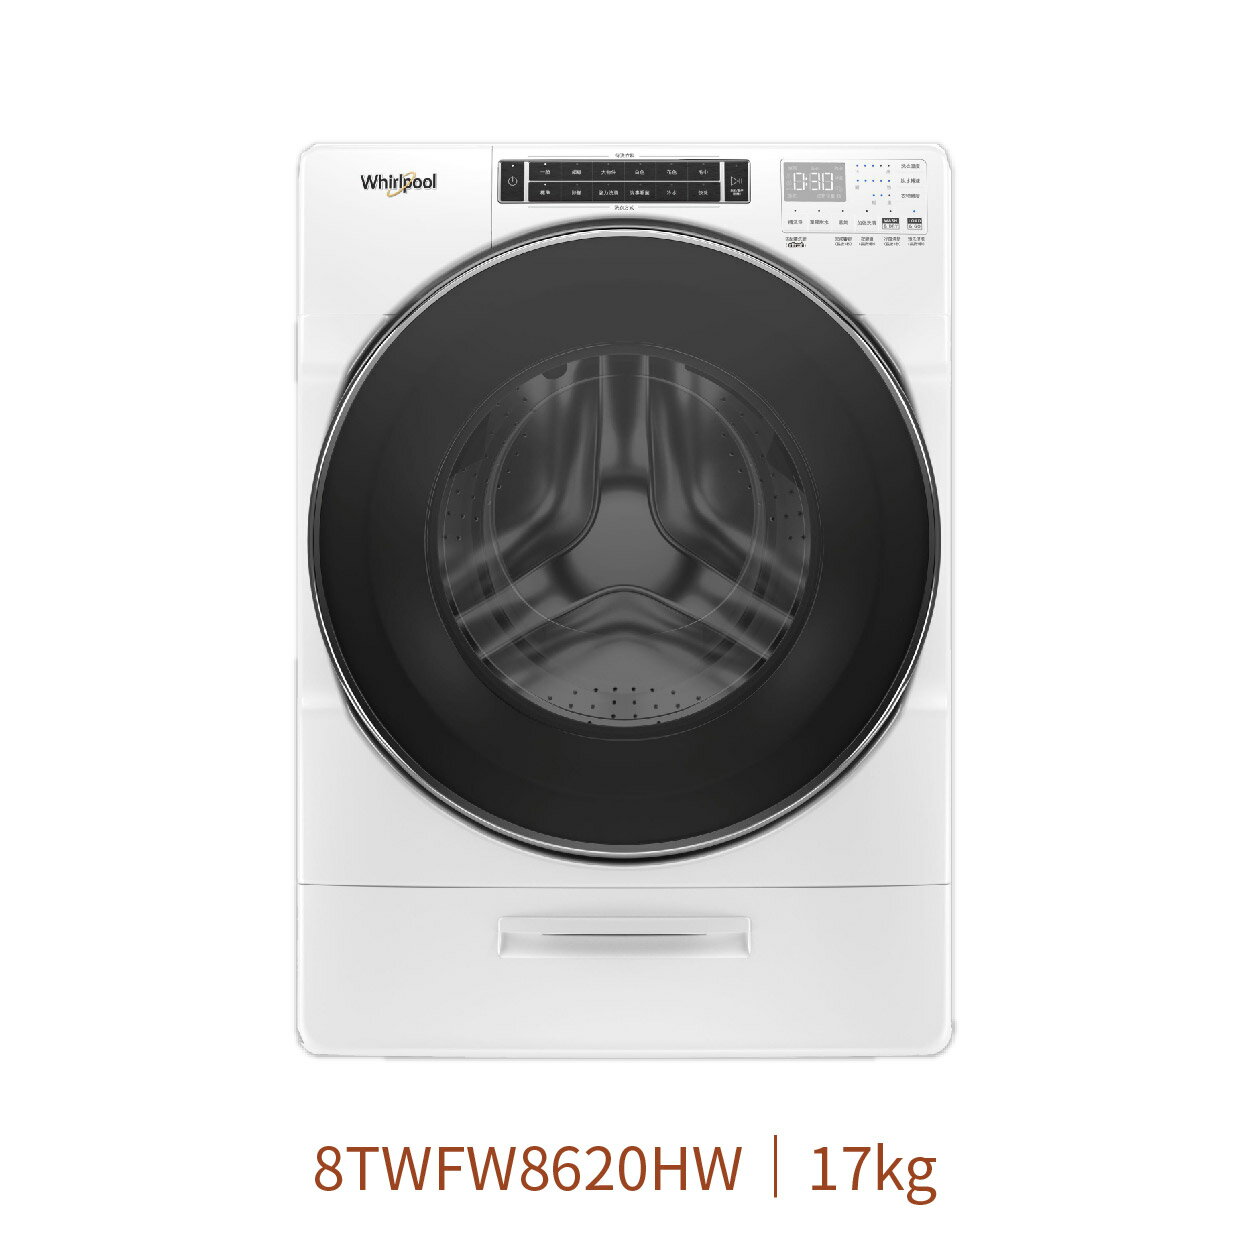 【點數10%回饋】惠而浦 8TWFW8620HW 蒸氣17kg滾筒洗衣機